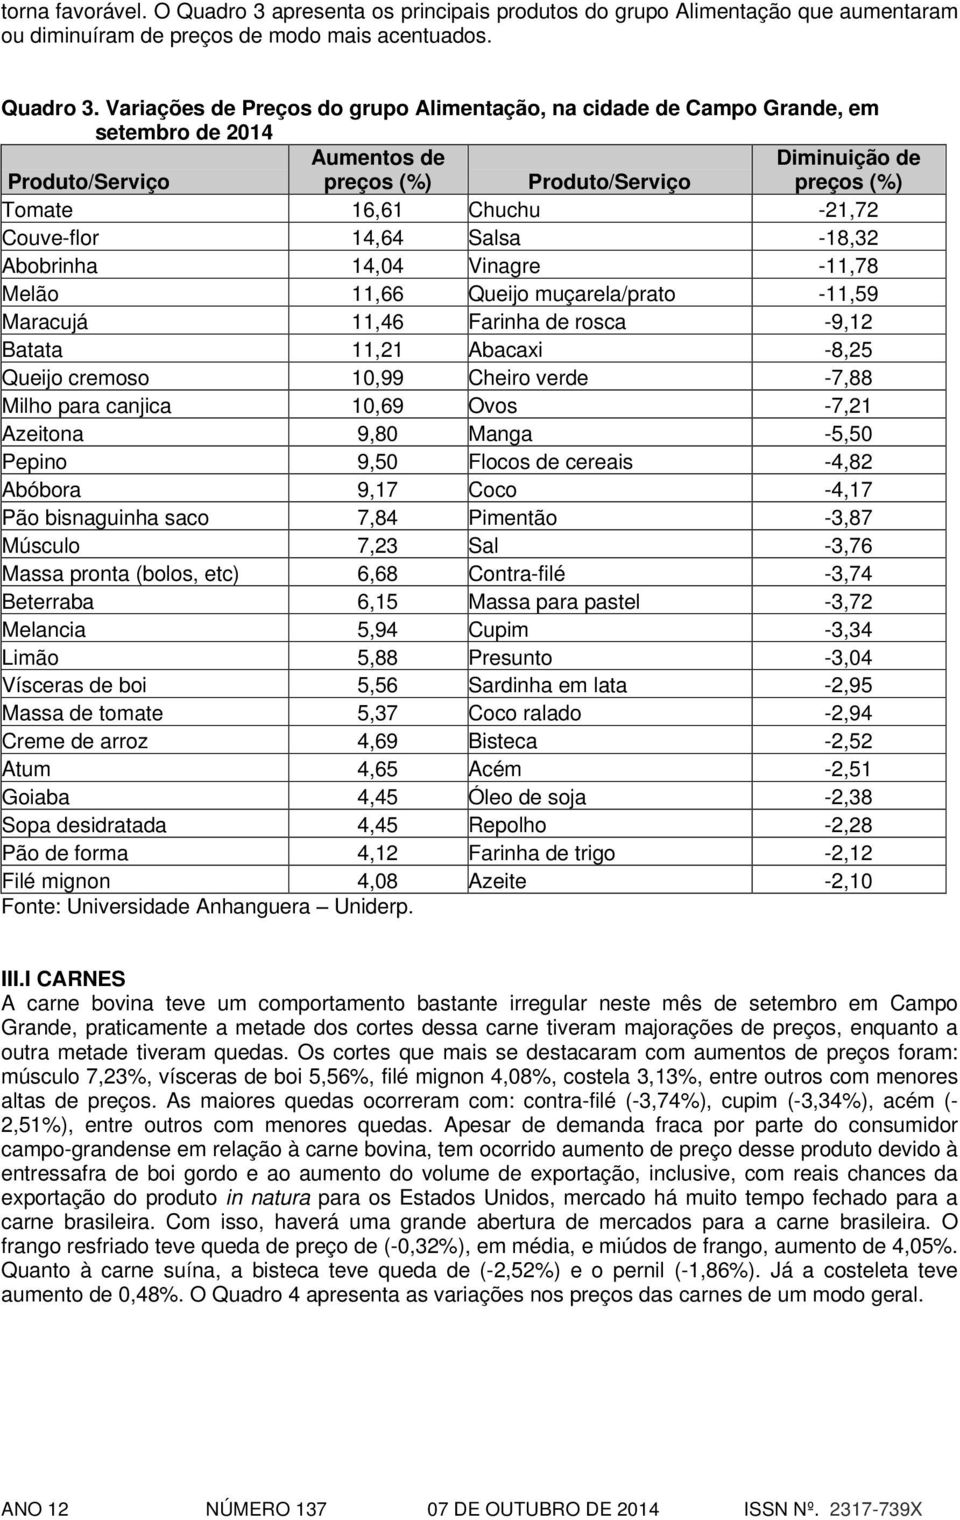 Variações de Preços do grupo Alimentação, na cidade de Campo Grande, em setembro de 2014 Tomate 16,61 Chuchu -21,72 Couve-flor 14,64 Salsa -18,32 Abobrinha 14,04 Vinagre -11,78 Melão 11,66 Queijo